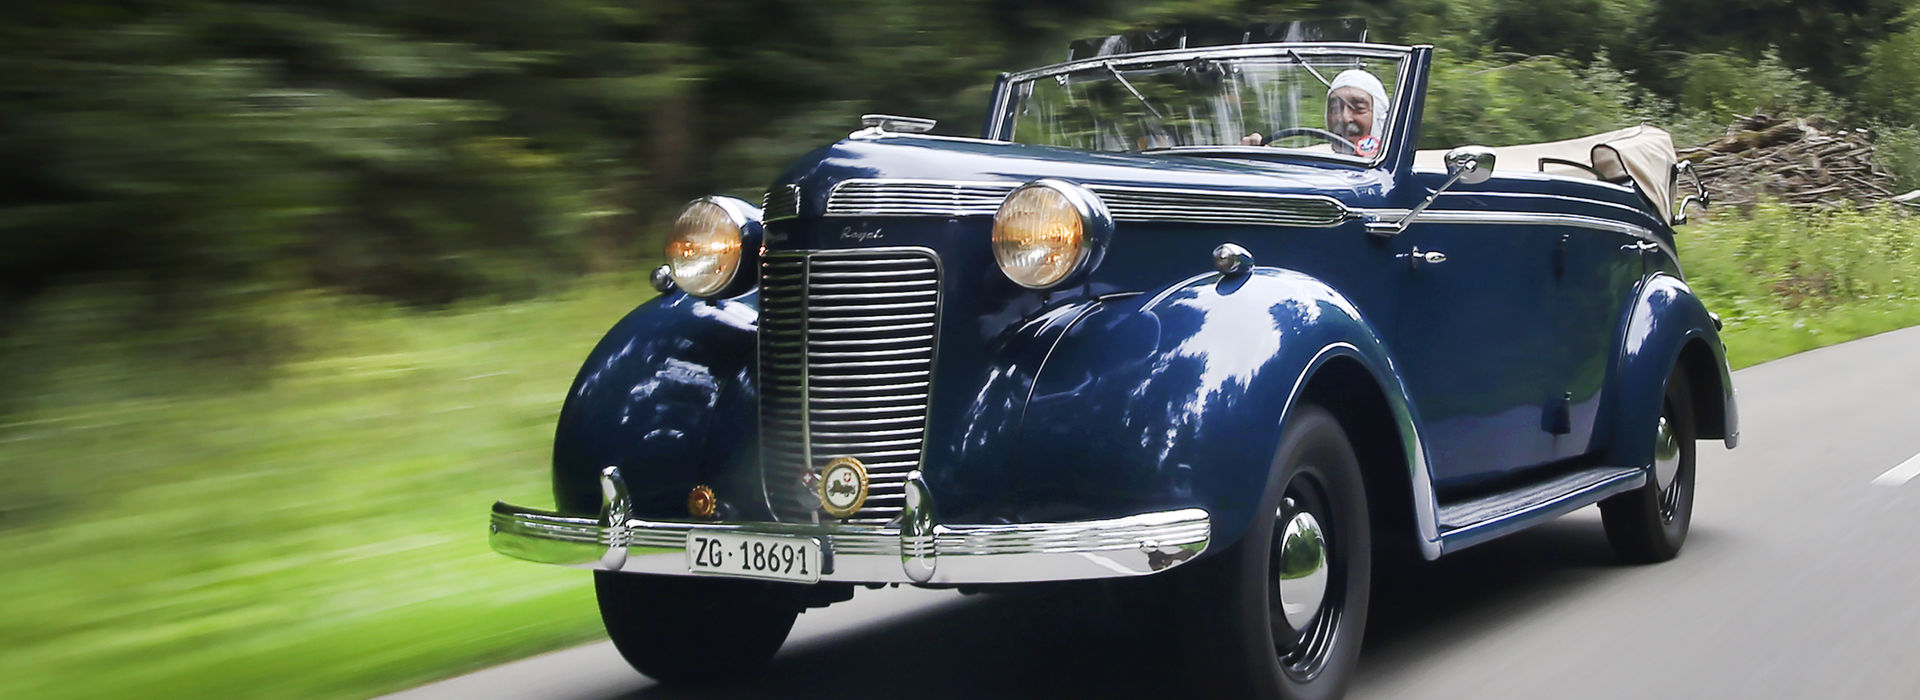 Klassiker: Chrysler Royal Cabriolet Tüscher 1937